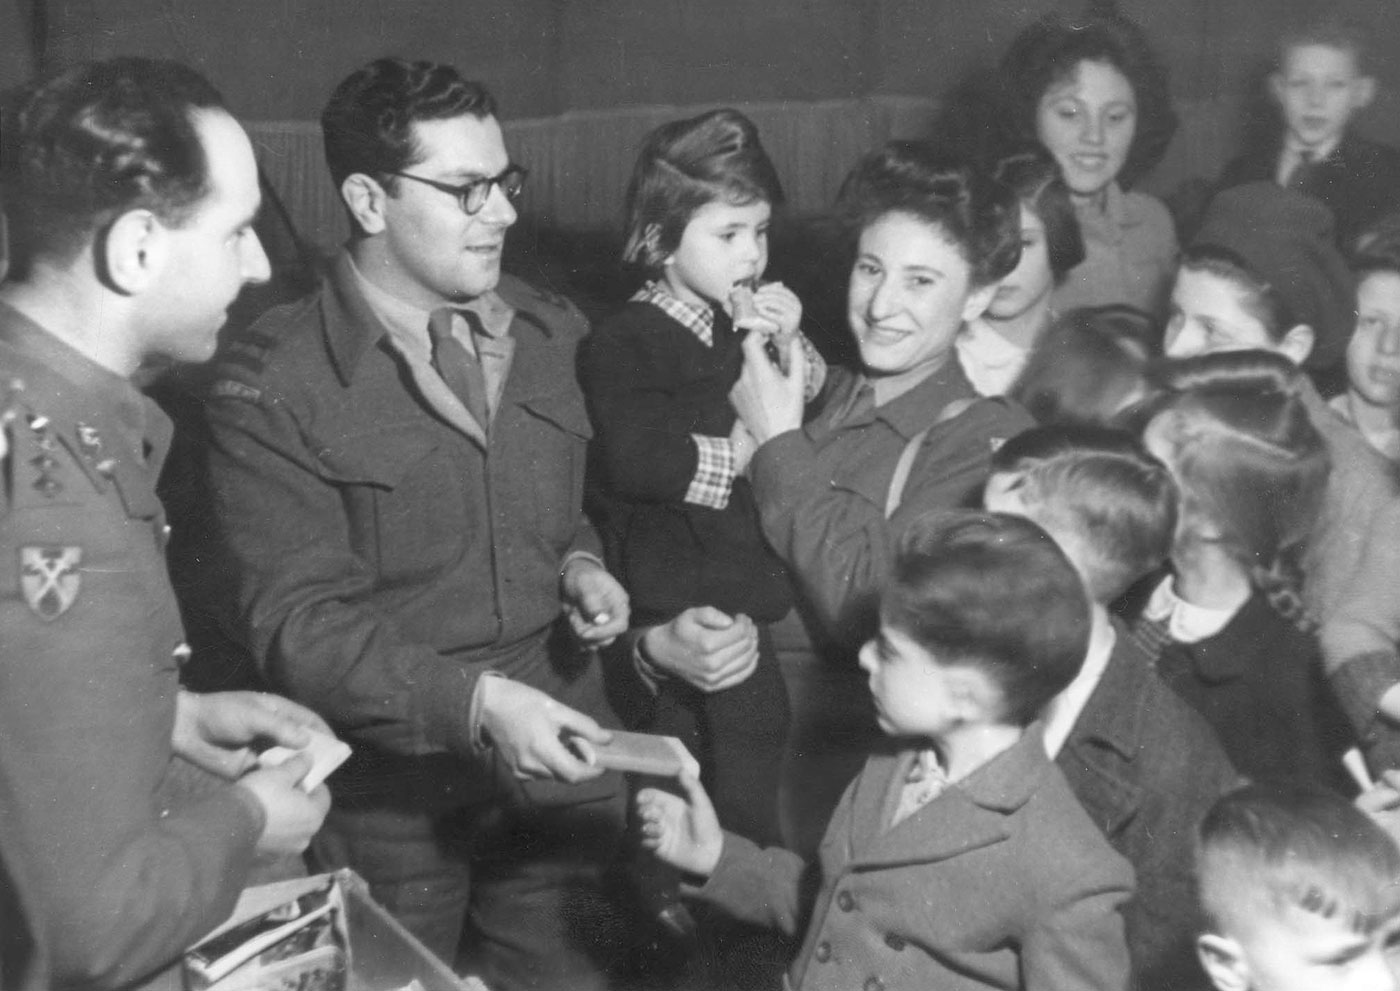 נציגים מהצבא הבריטי עם ילדים במסיבת פורים בברלין, גרמניה, 17 במרס 1946